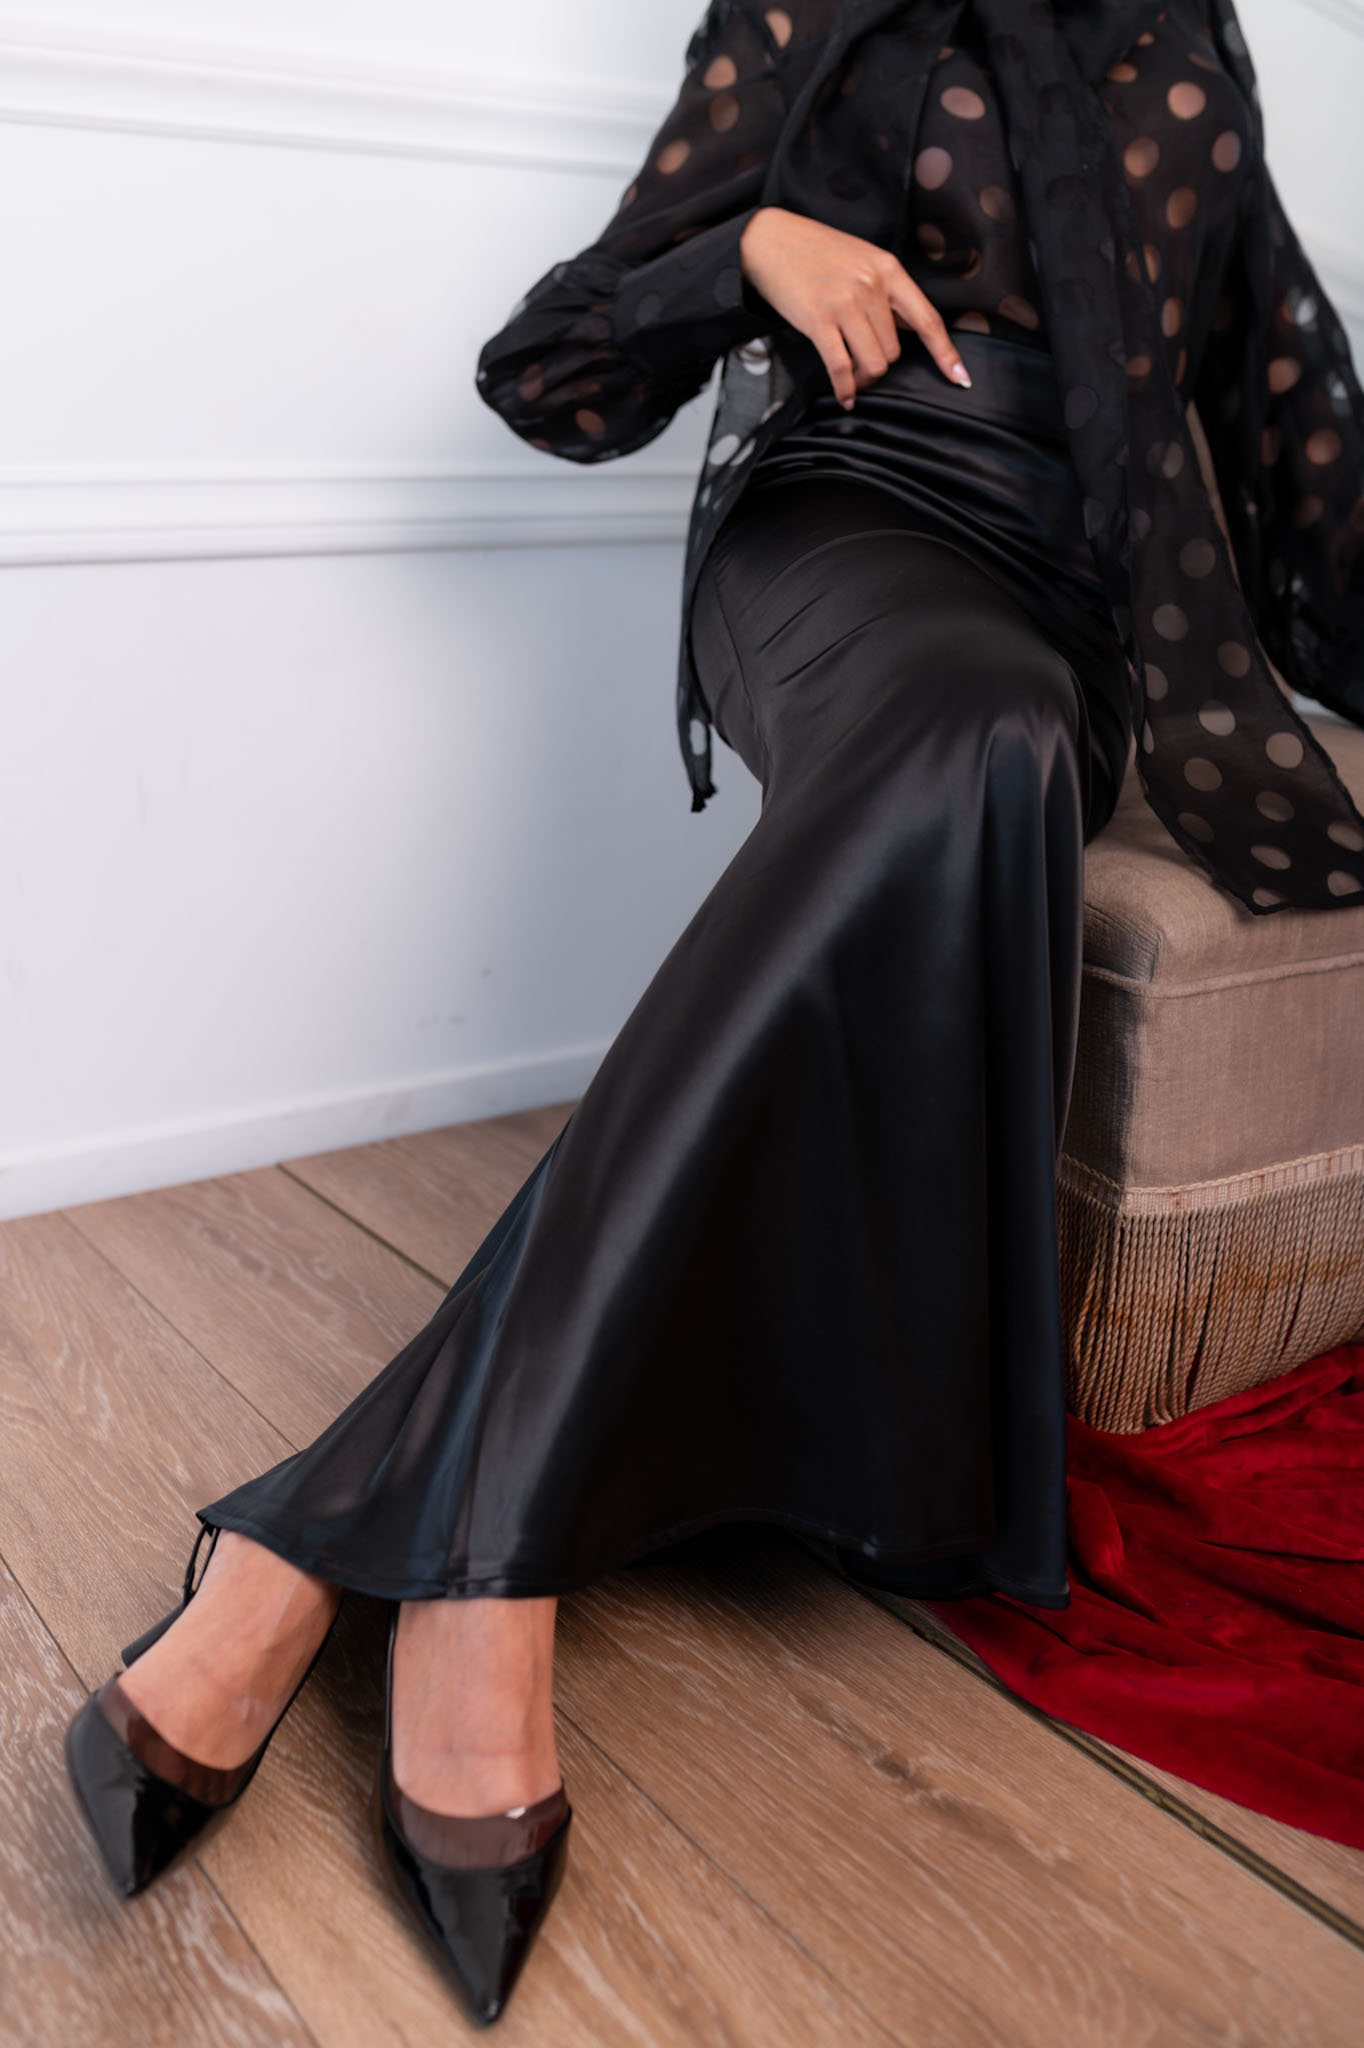 ΝΕΕΣ ΑΦΙΞΕΙΣ Contrast μακρία φούστα με όψη σατέν μαύρο